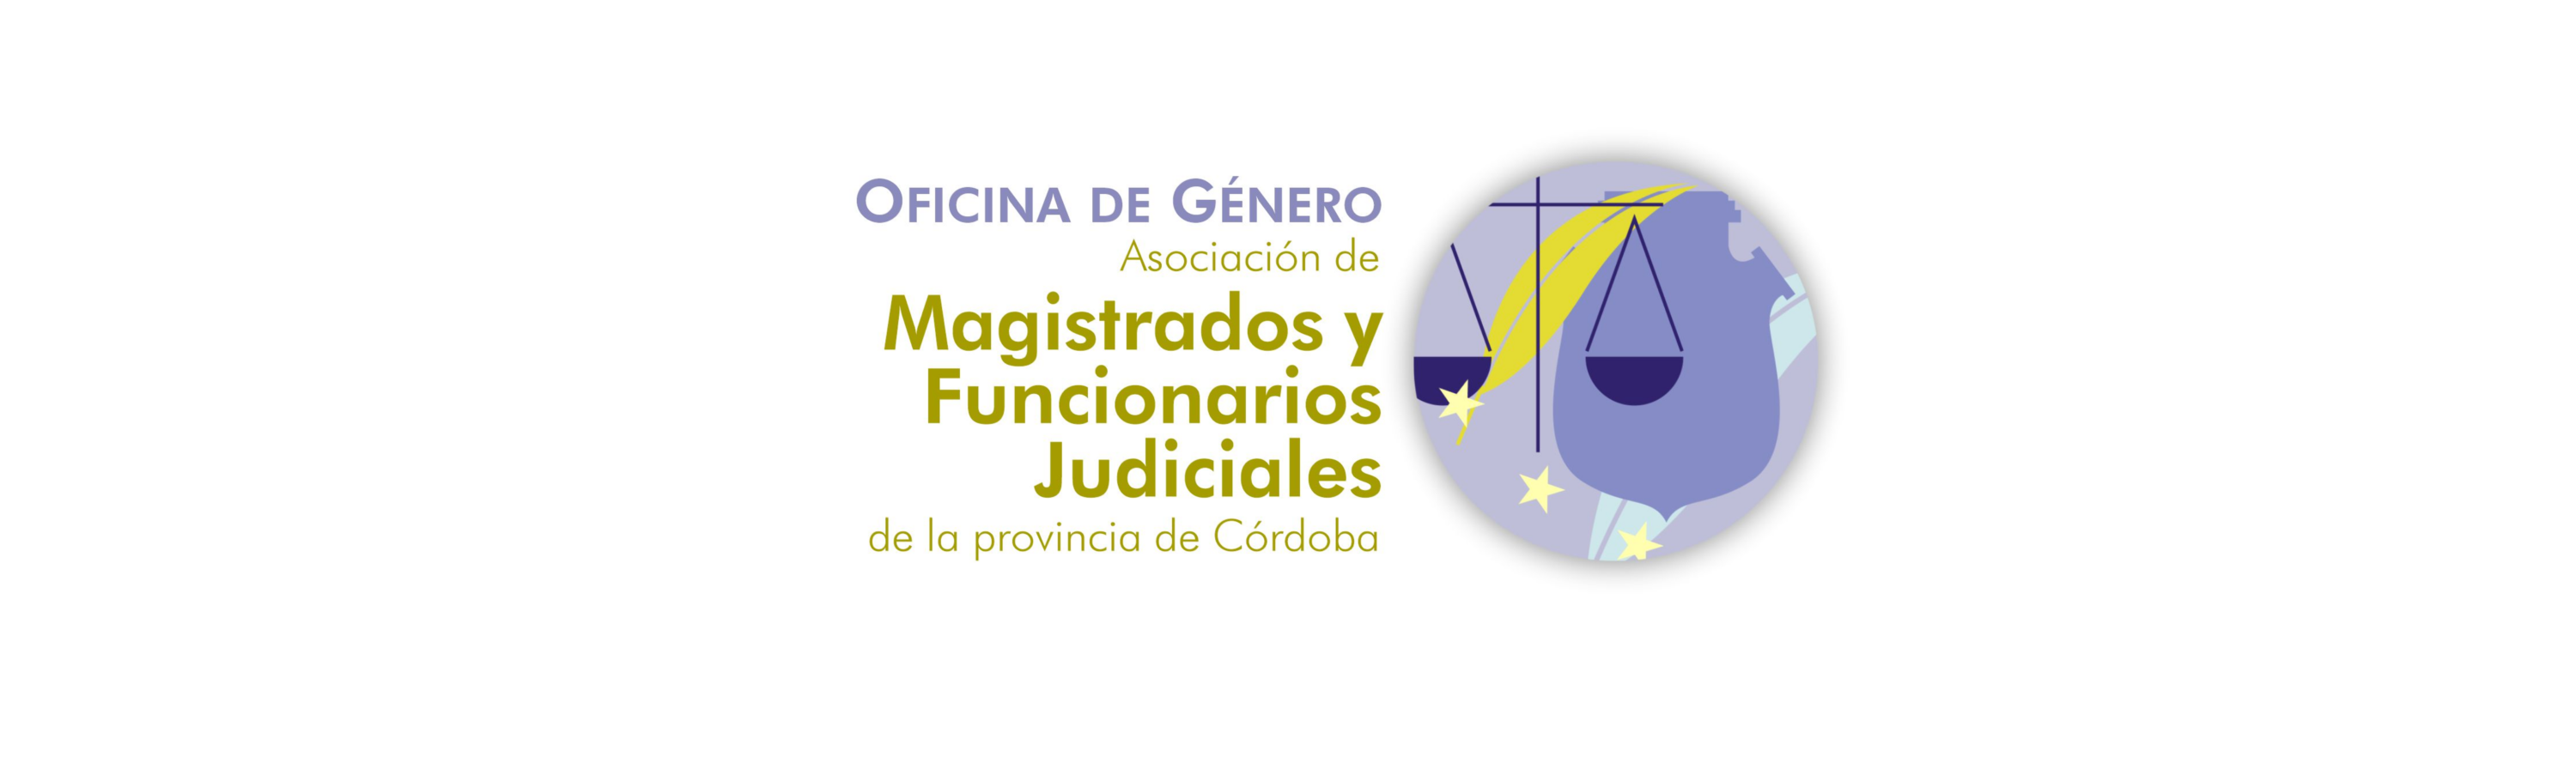 Asociación de Magistrados y Funcionarios Judiciales de la Provincia de Córdoba | Presentación de la Oficina de Género